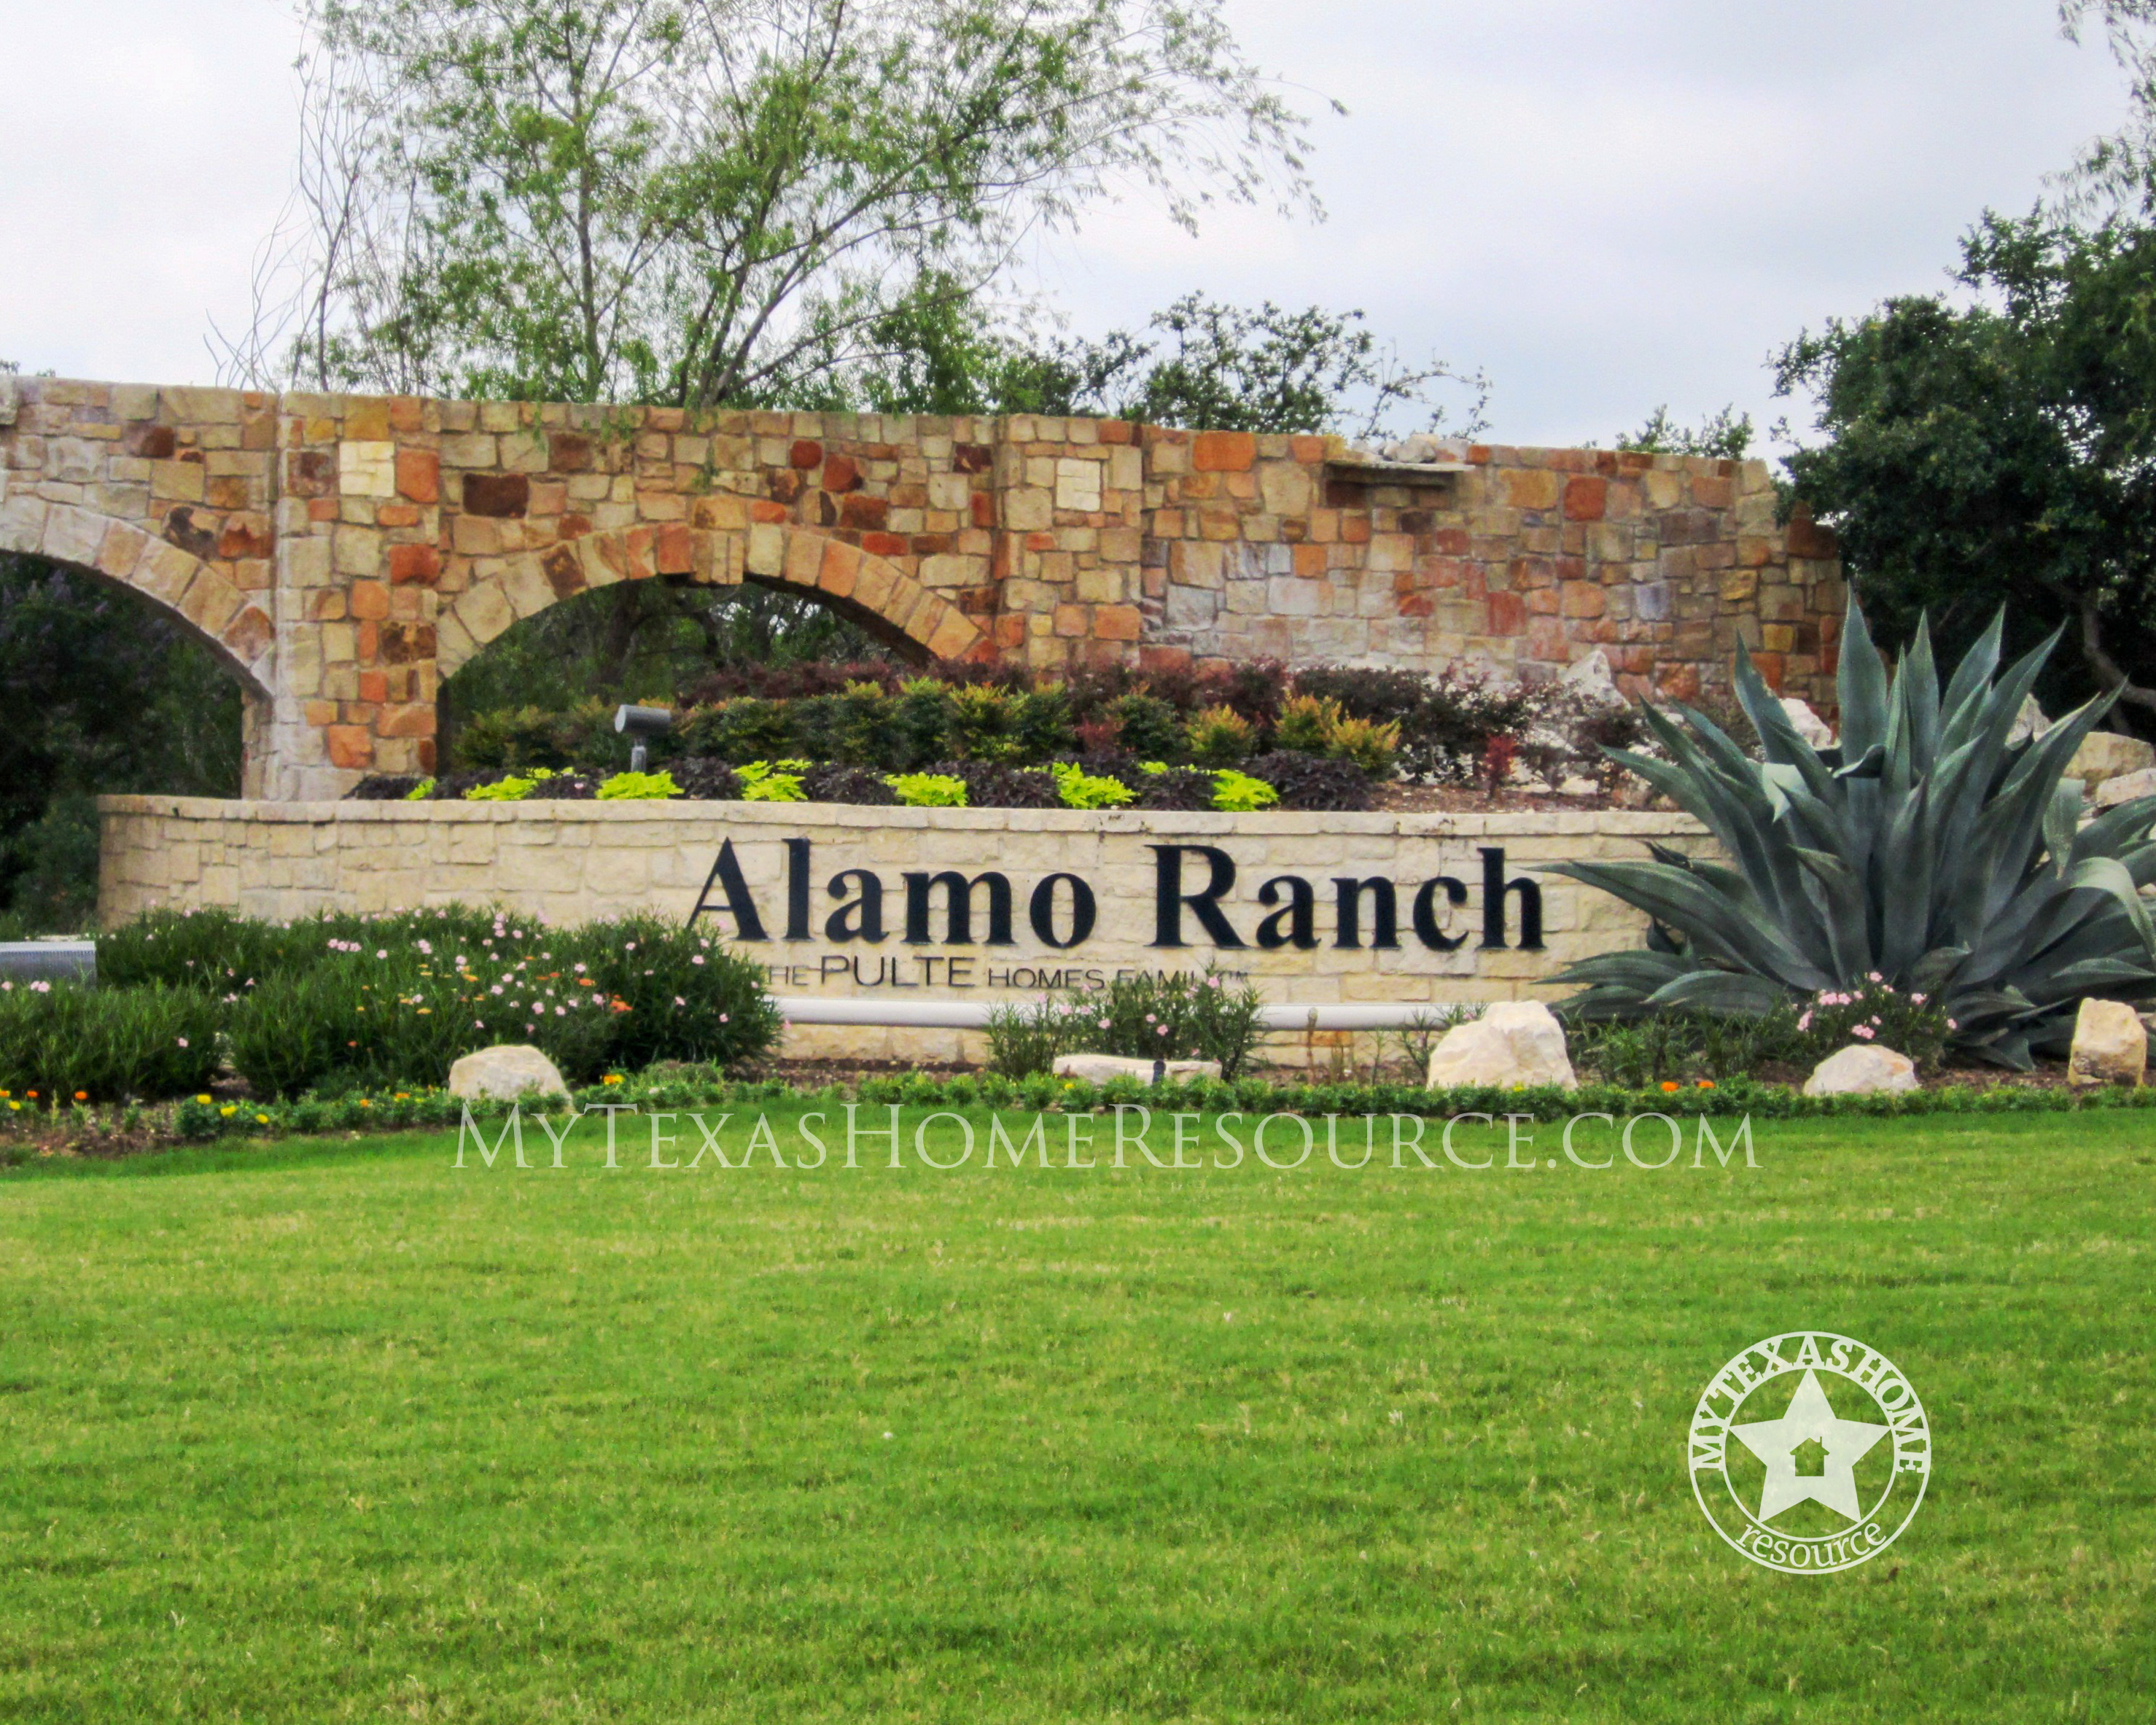 阿拉莫牧场分区，网上正规的彩票网站，得克萨斯州